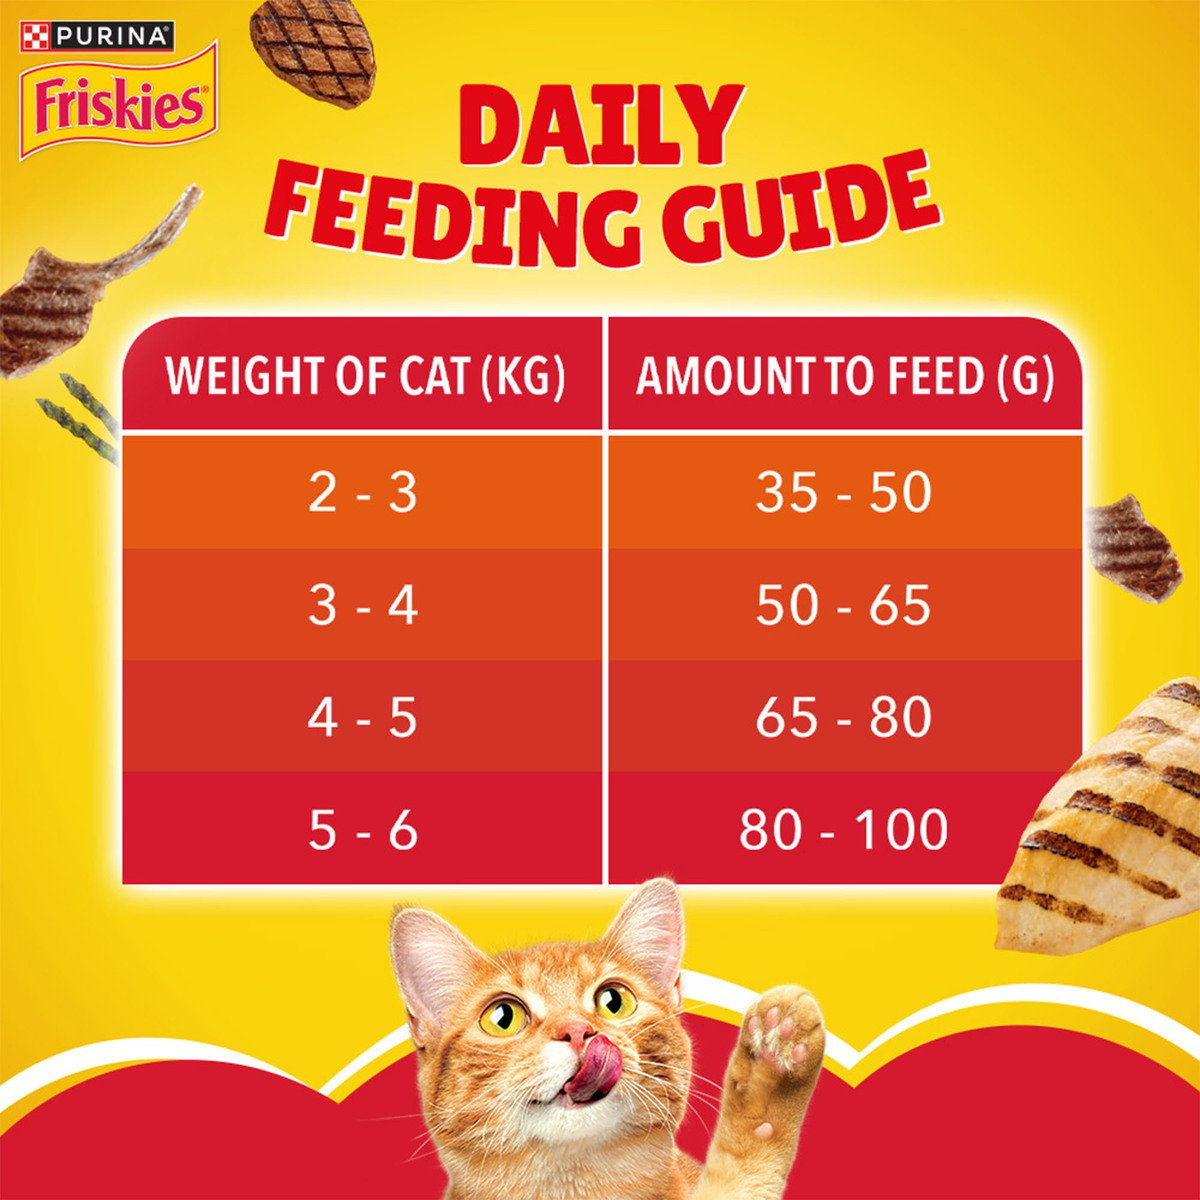 Purina Friskies Cat Food Meaty Grill Cat Food 1 kg